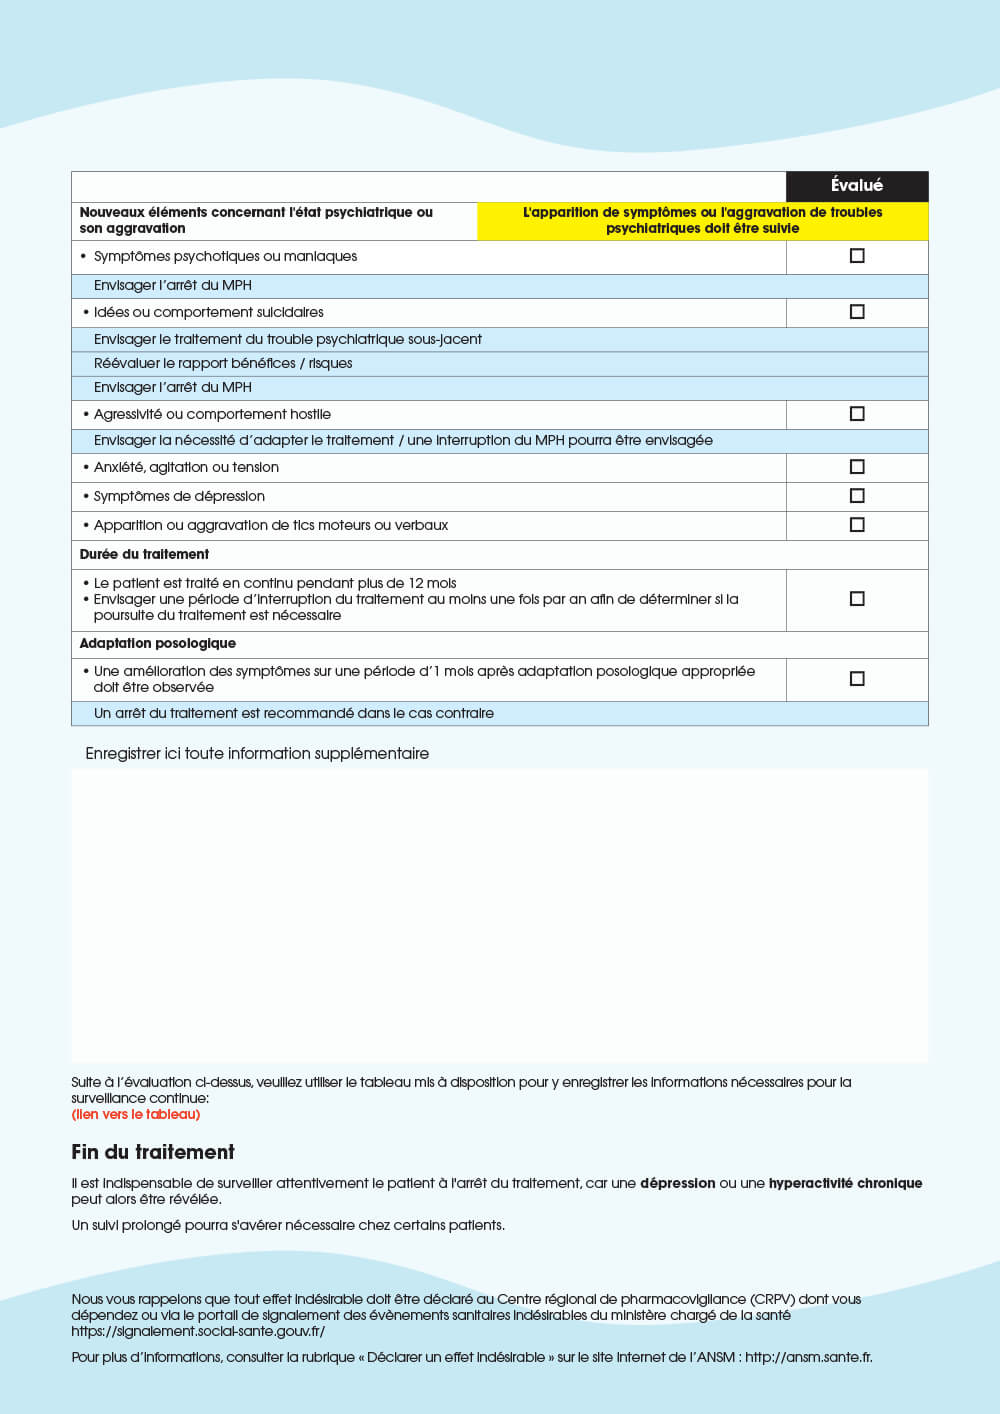 Aperçu : Checklist n°2 : Liste des points à vérifier pour le suivi du traitement en cours par méthylphénidate (MPH)